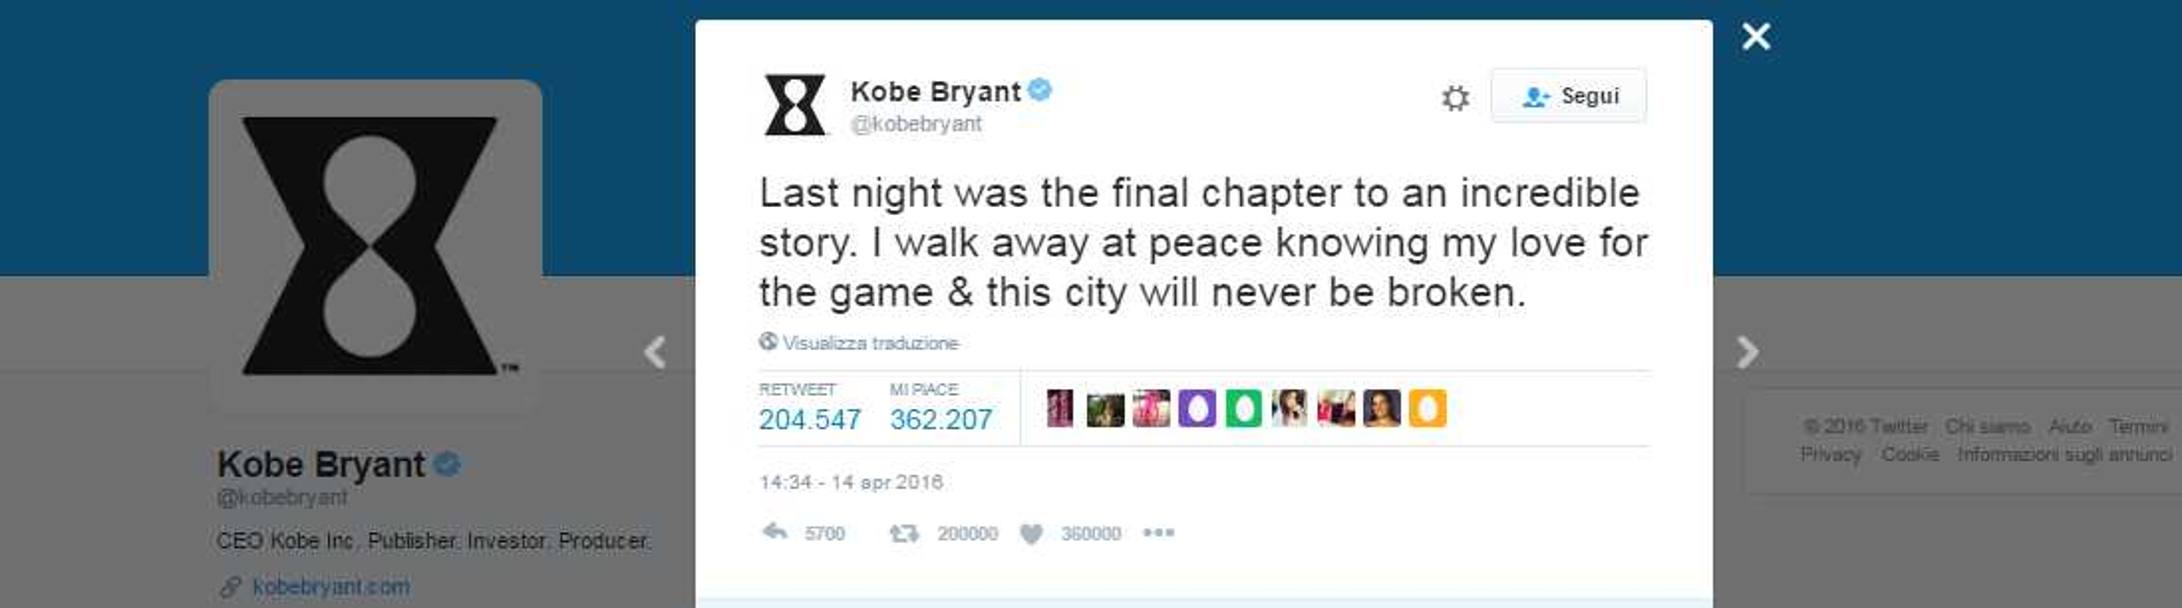 6. La leggenda del basket Kobe Bryant twitta le sue emozioni nella sua ultima notte da giocatore – 205.000 Retweet